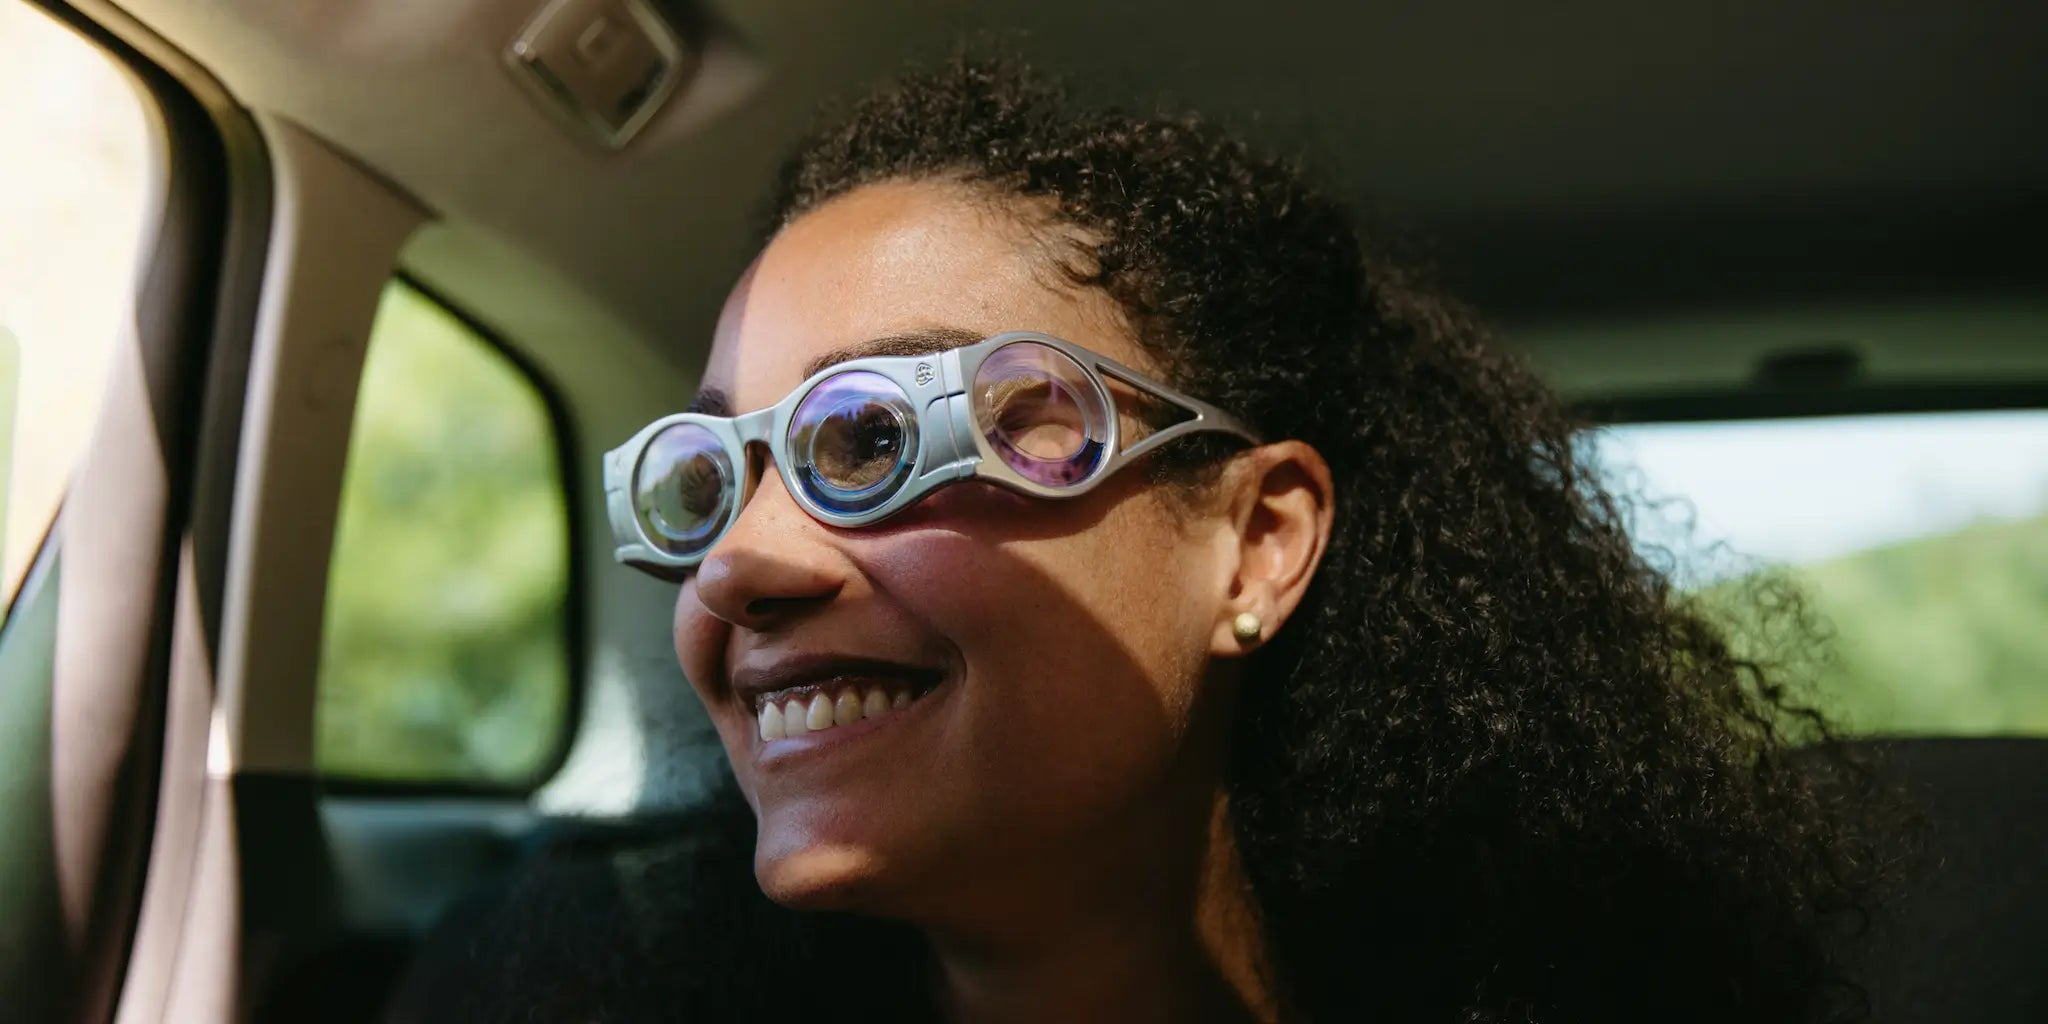 femme métisse en gros plan dans une voiture qui sourit avec des lunettes contre le mal des transports